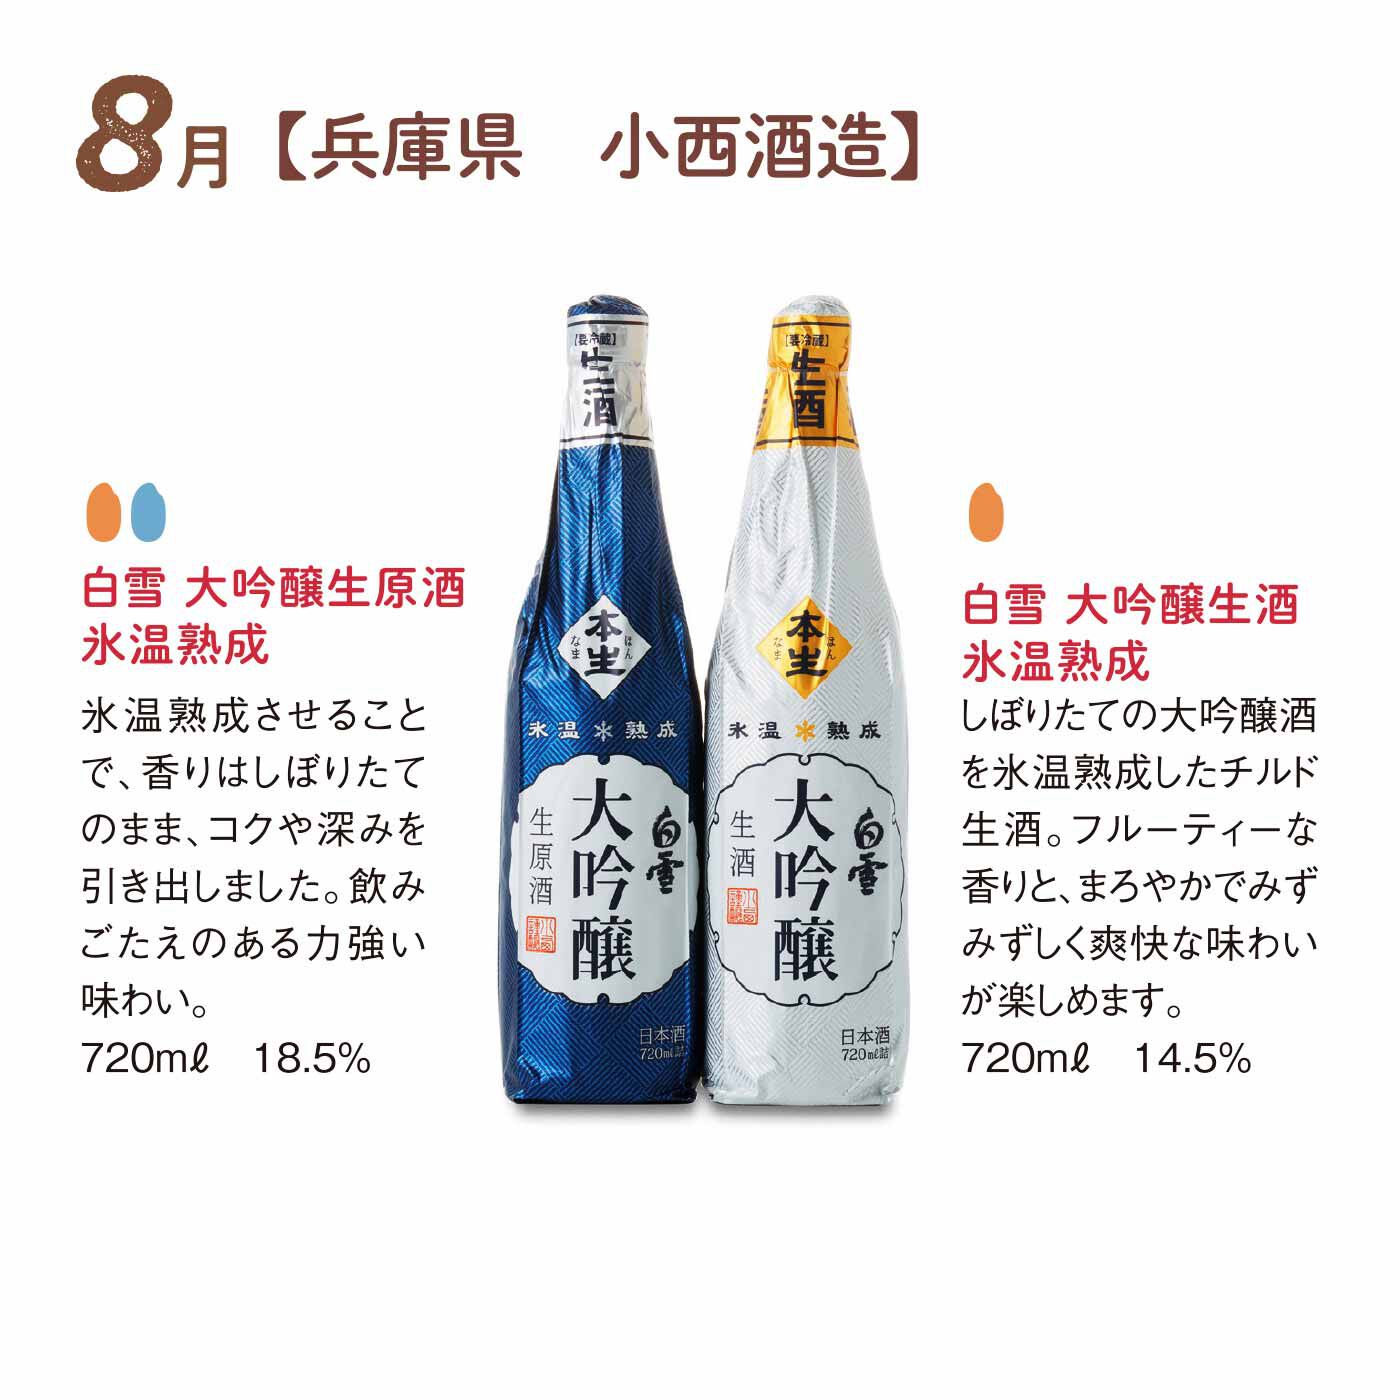 FP産地直送マルシェ|【締切 5/6】鮮度を楽しむフレッシュな生酒と冷やしておいしい日本酒12ヵ月コース